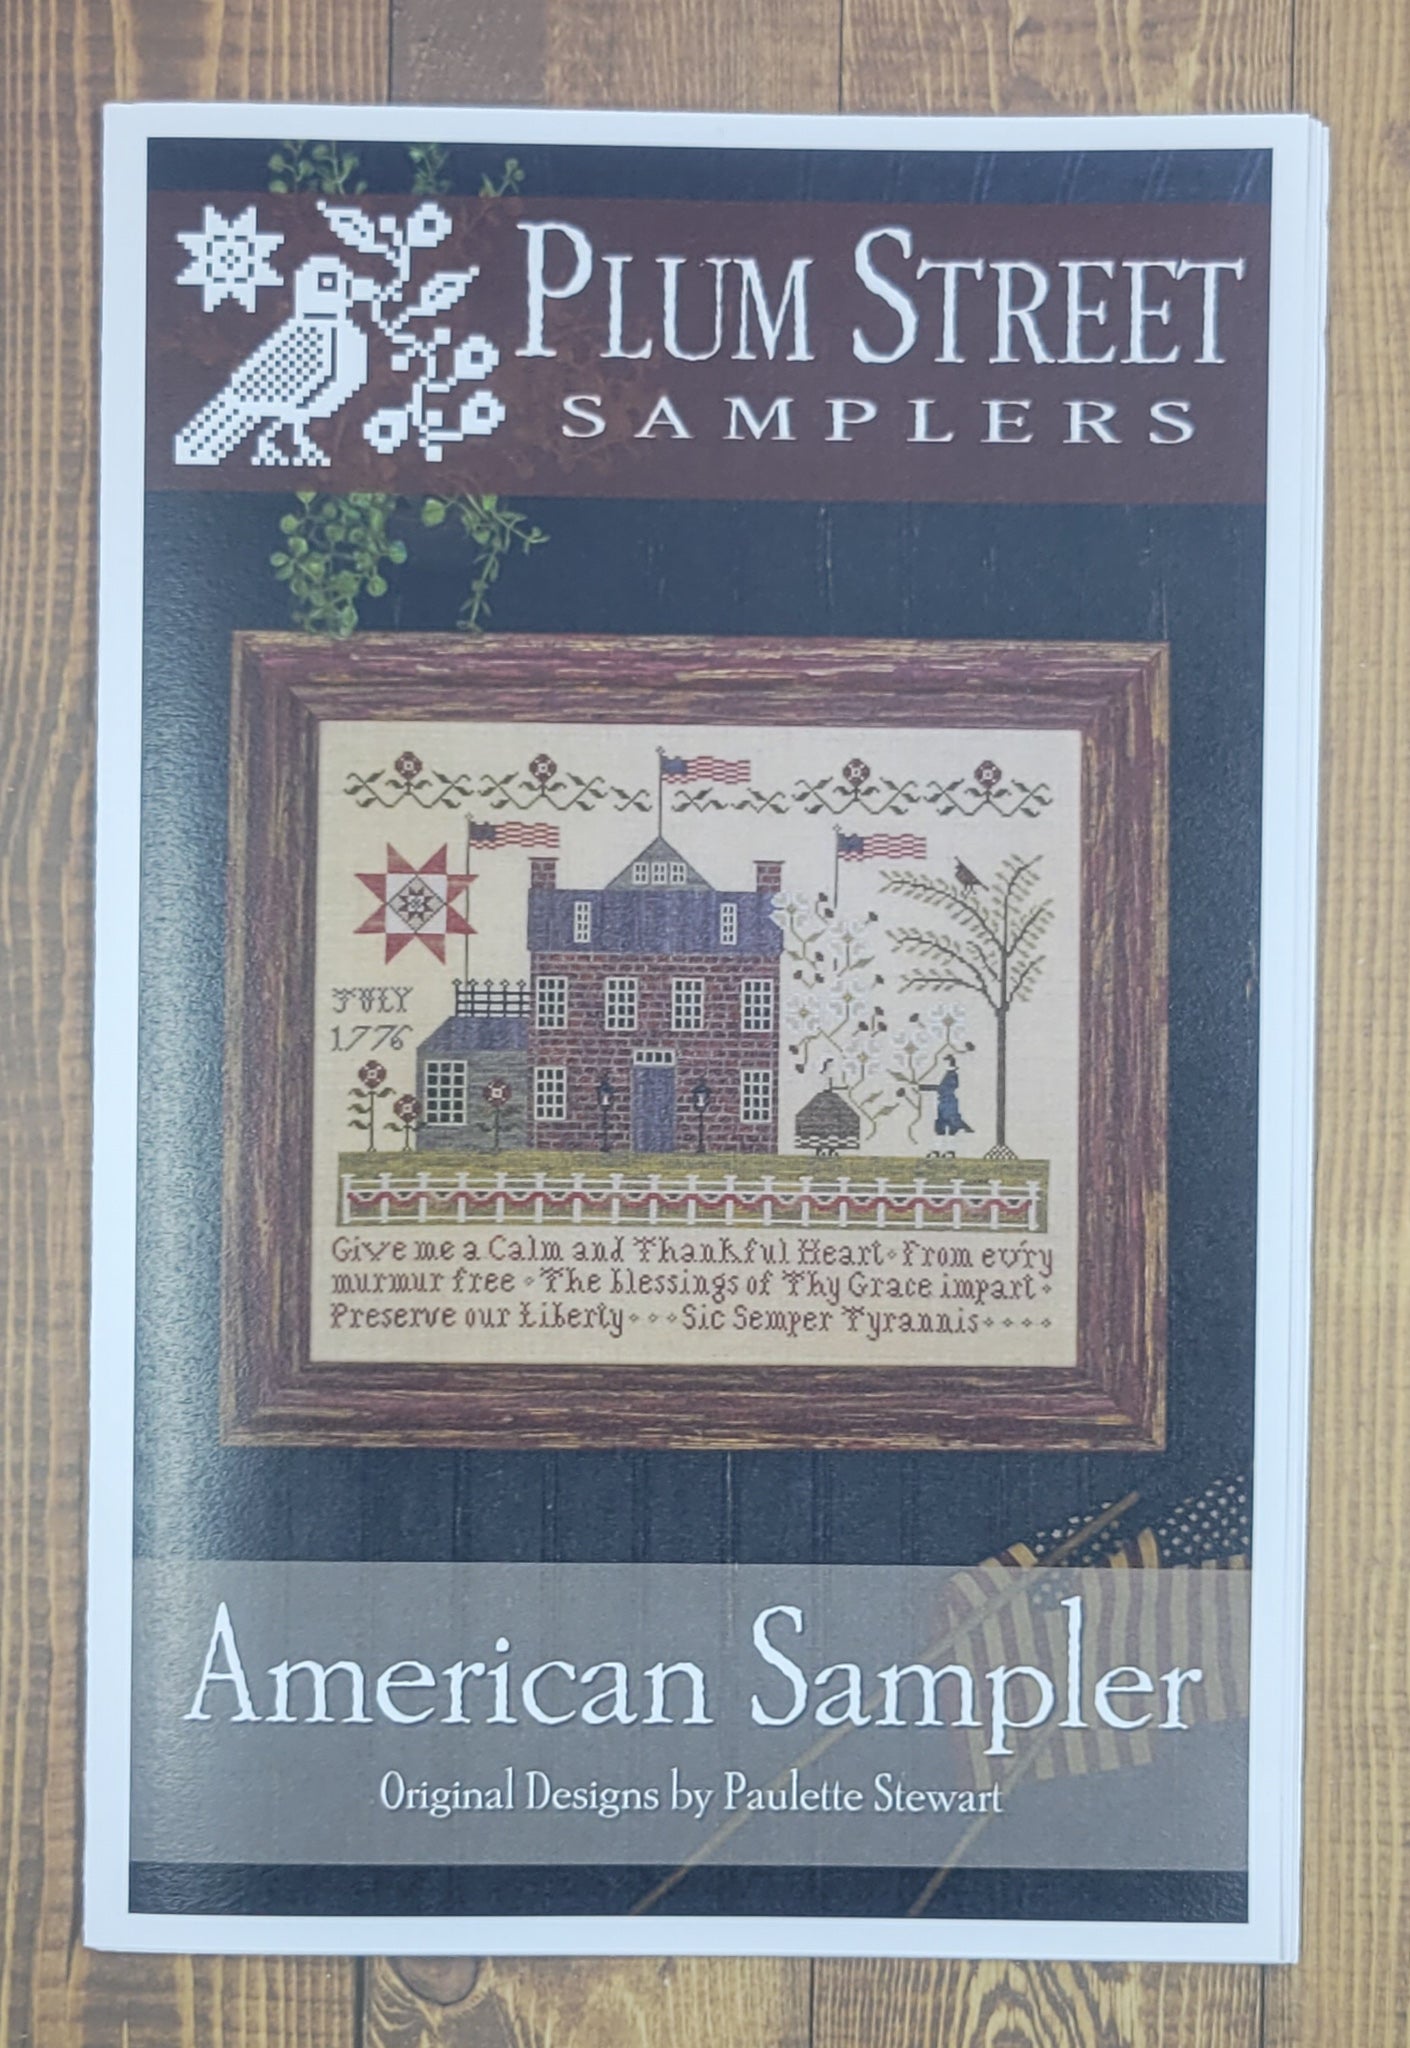 American Sampler by Plum Street Samplers